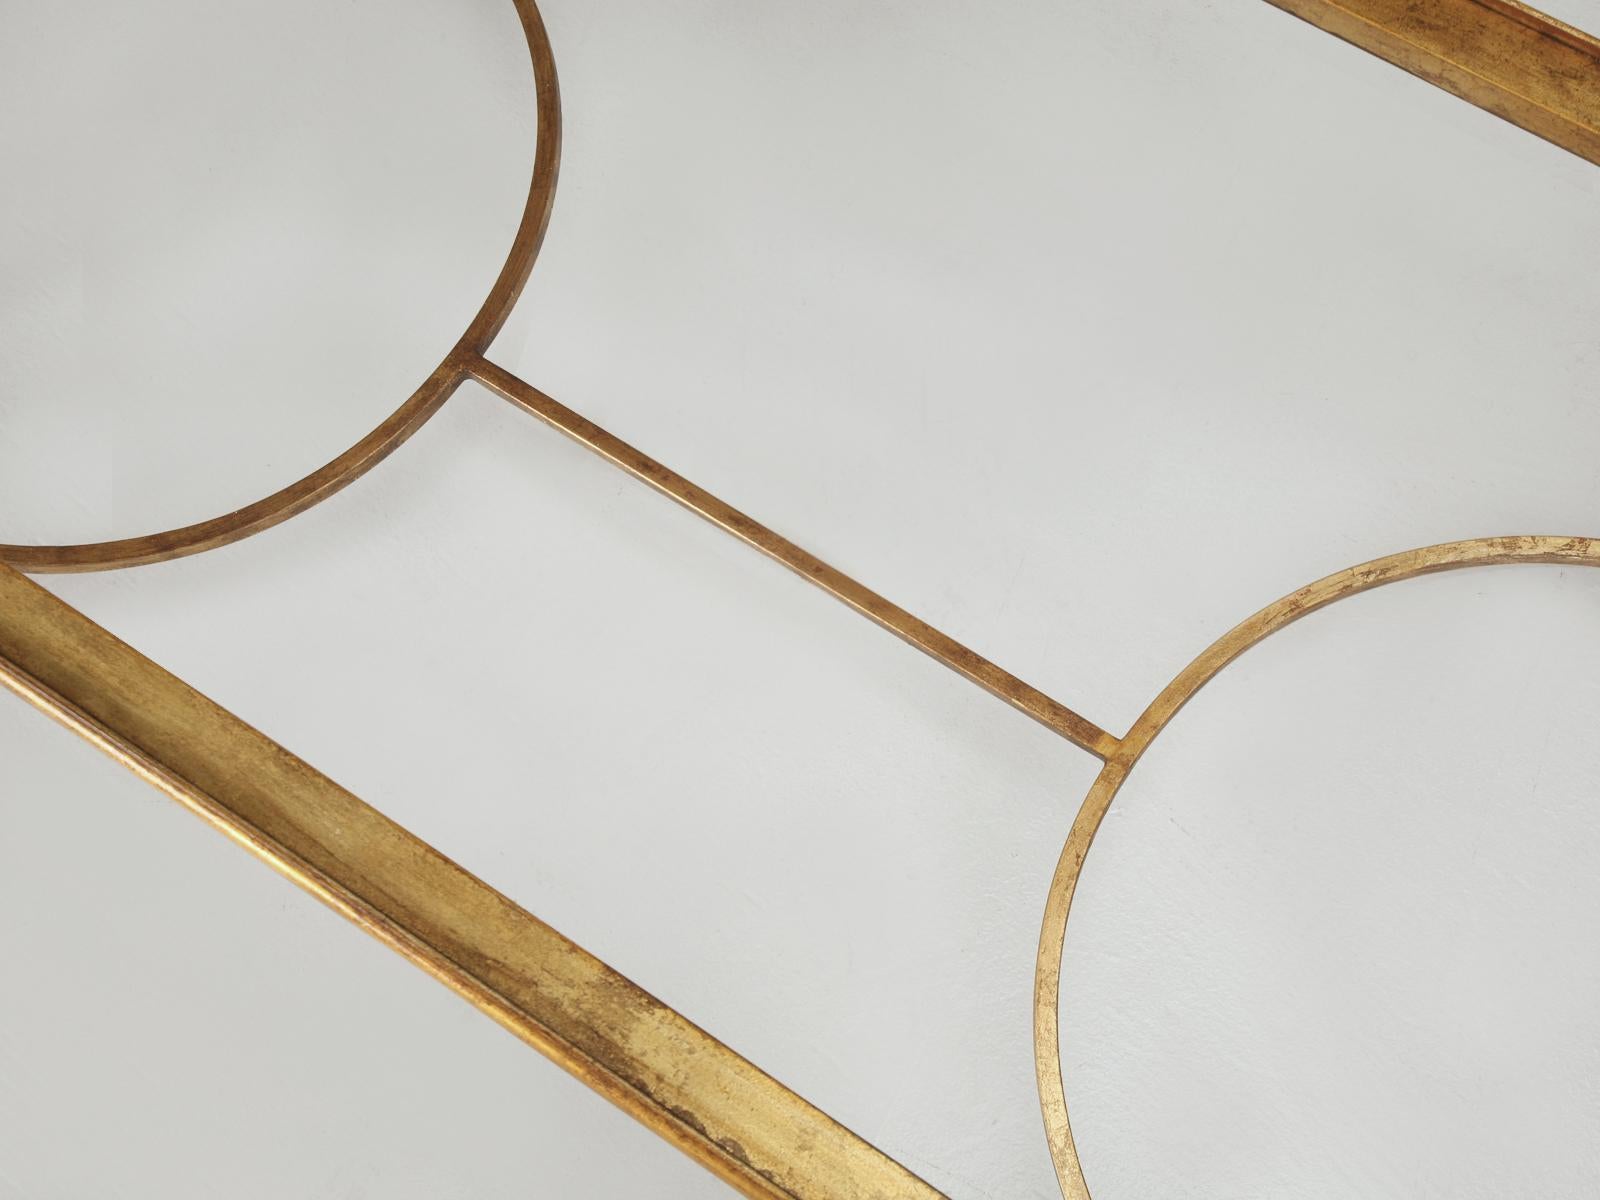 Fer Table basse en fer doré d'inspiration Maison Ramsey, fabriquée à la main sur commande au niveau local en vente